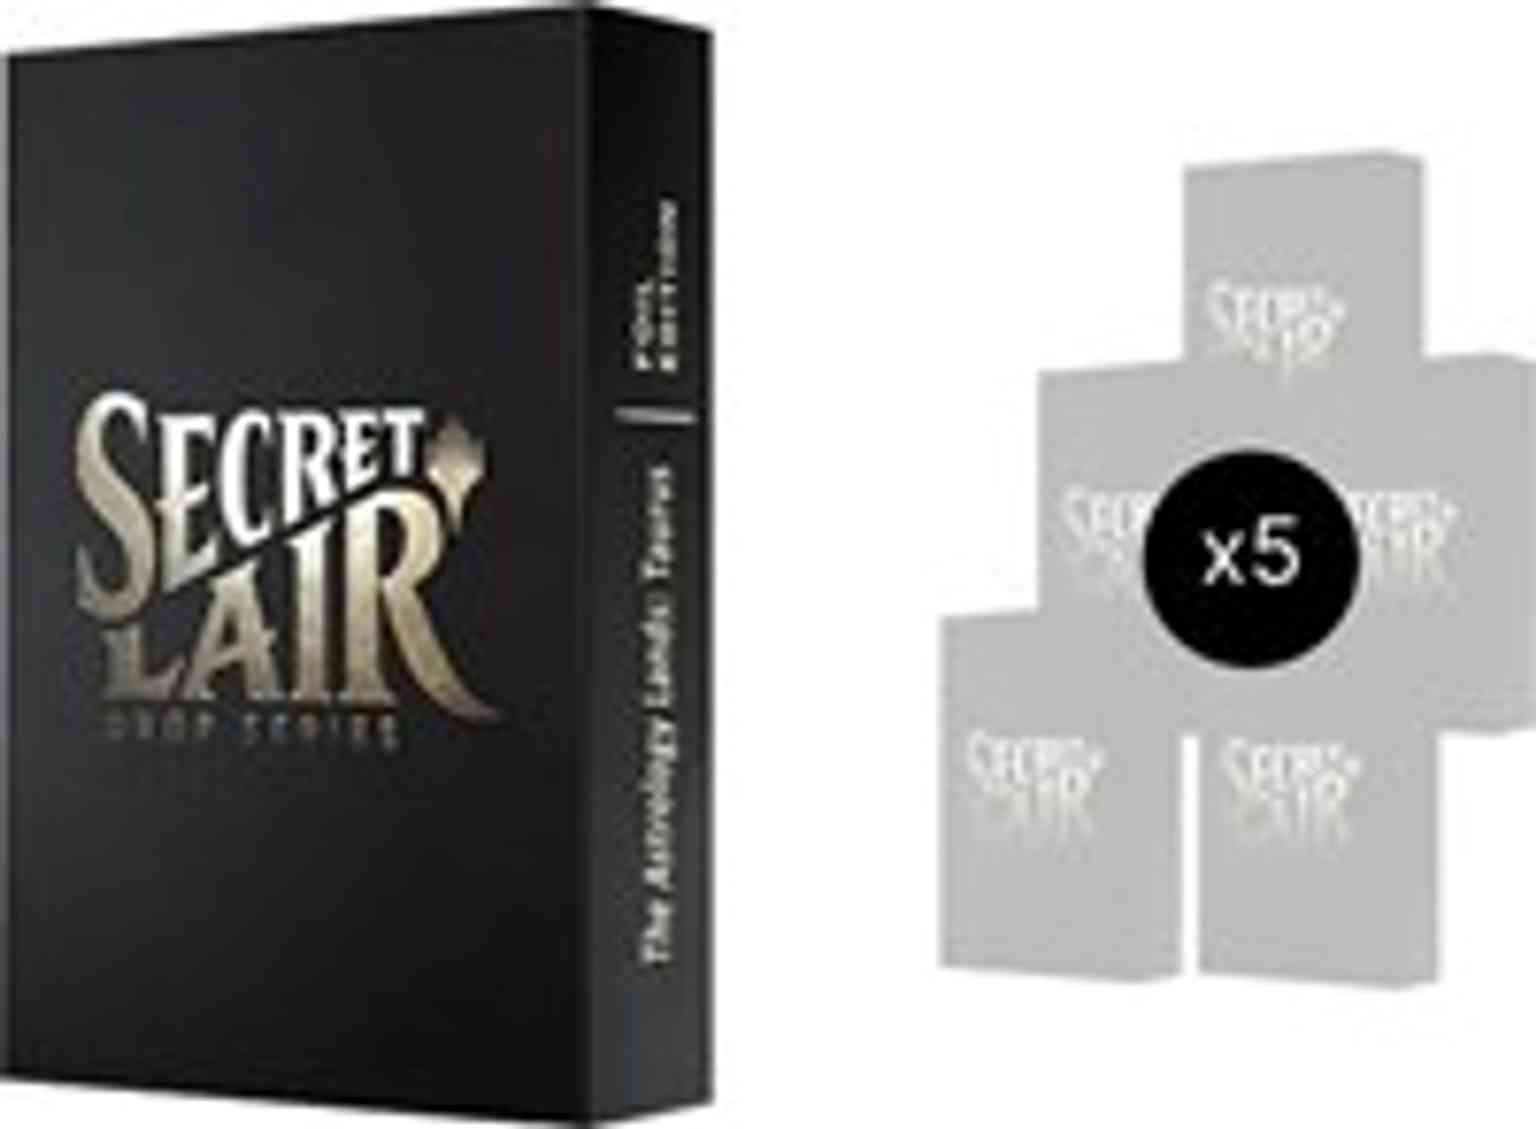 Secret Lair: Astrology Lands (Taurus) Bundle - Foil magic card front